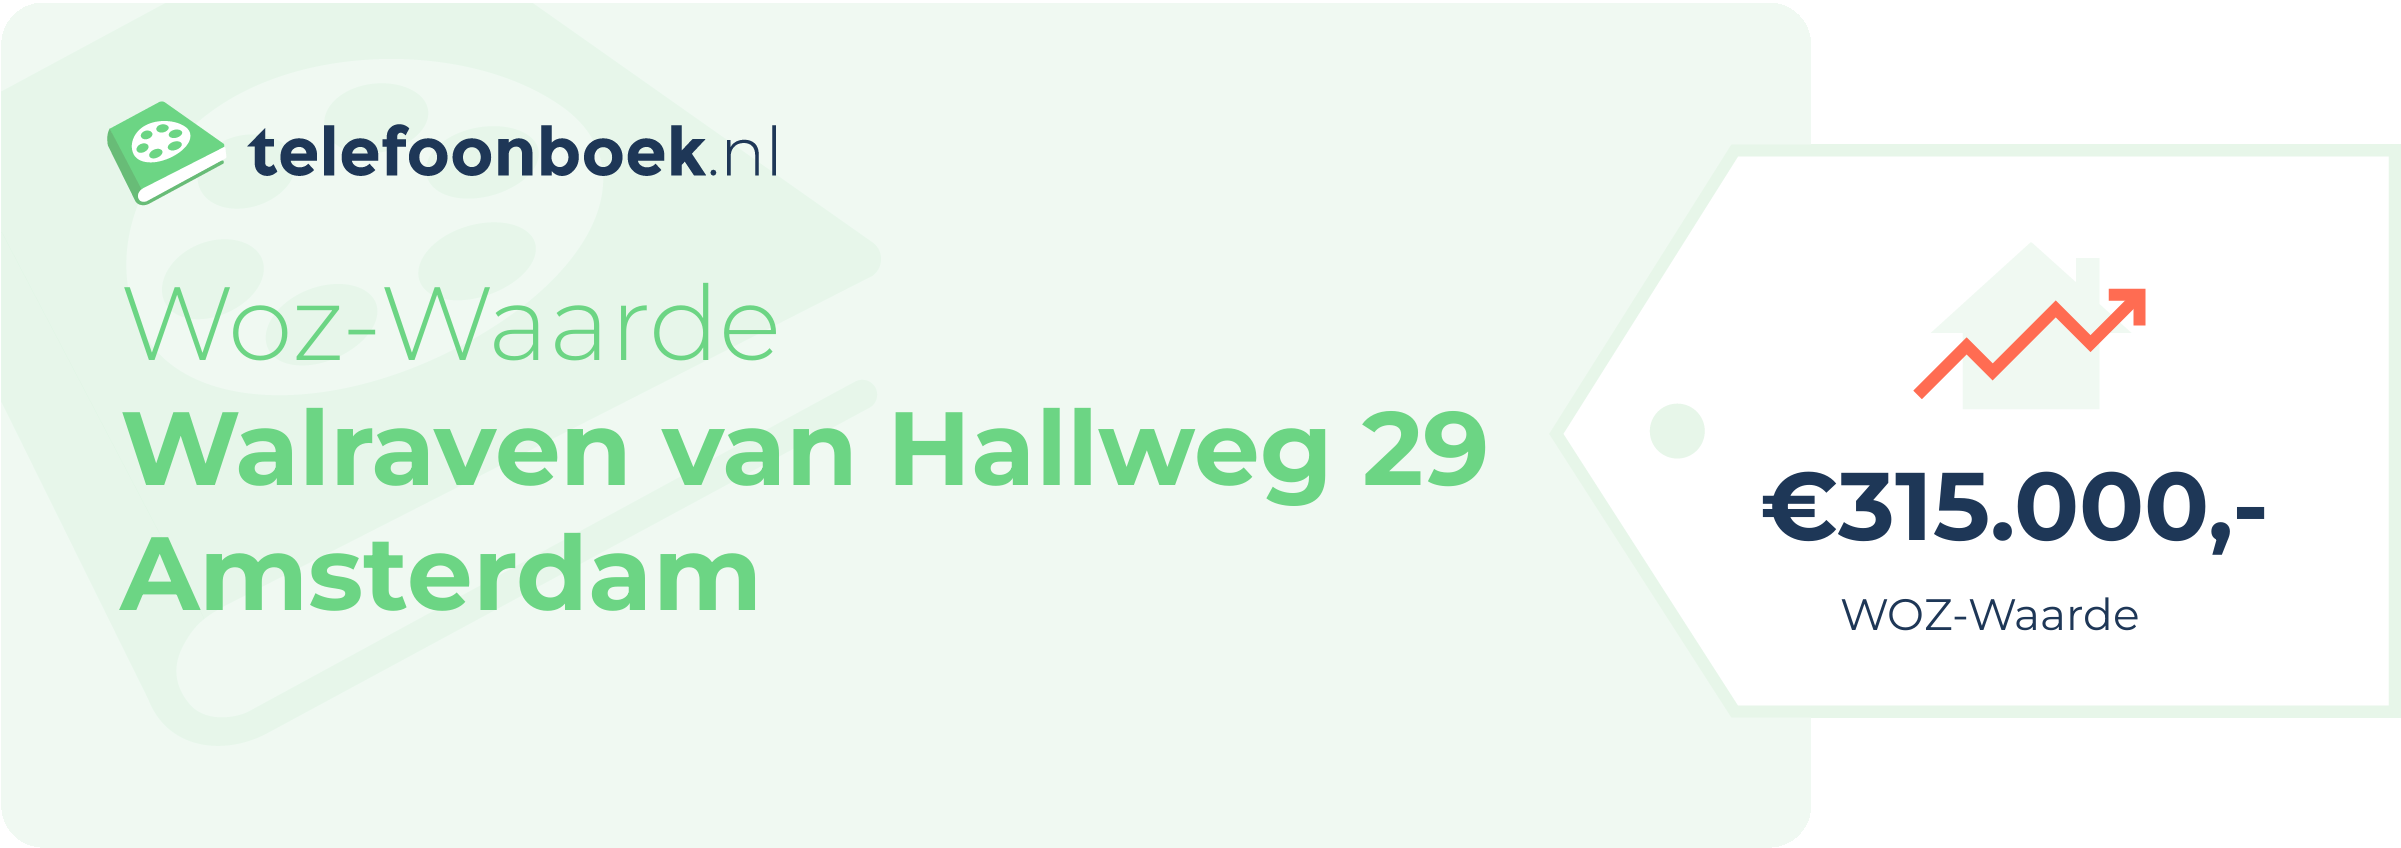 WOZ-waarde Walraven Van Hallweg 29 Amsterdam